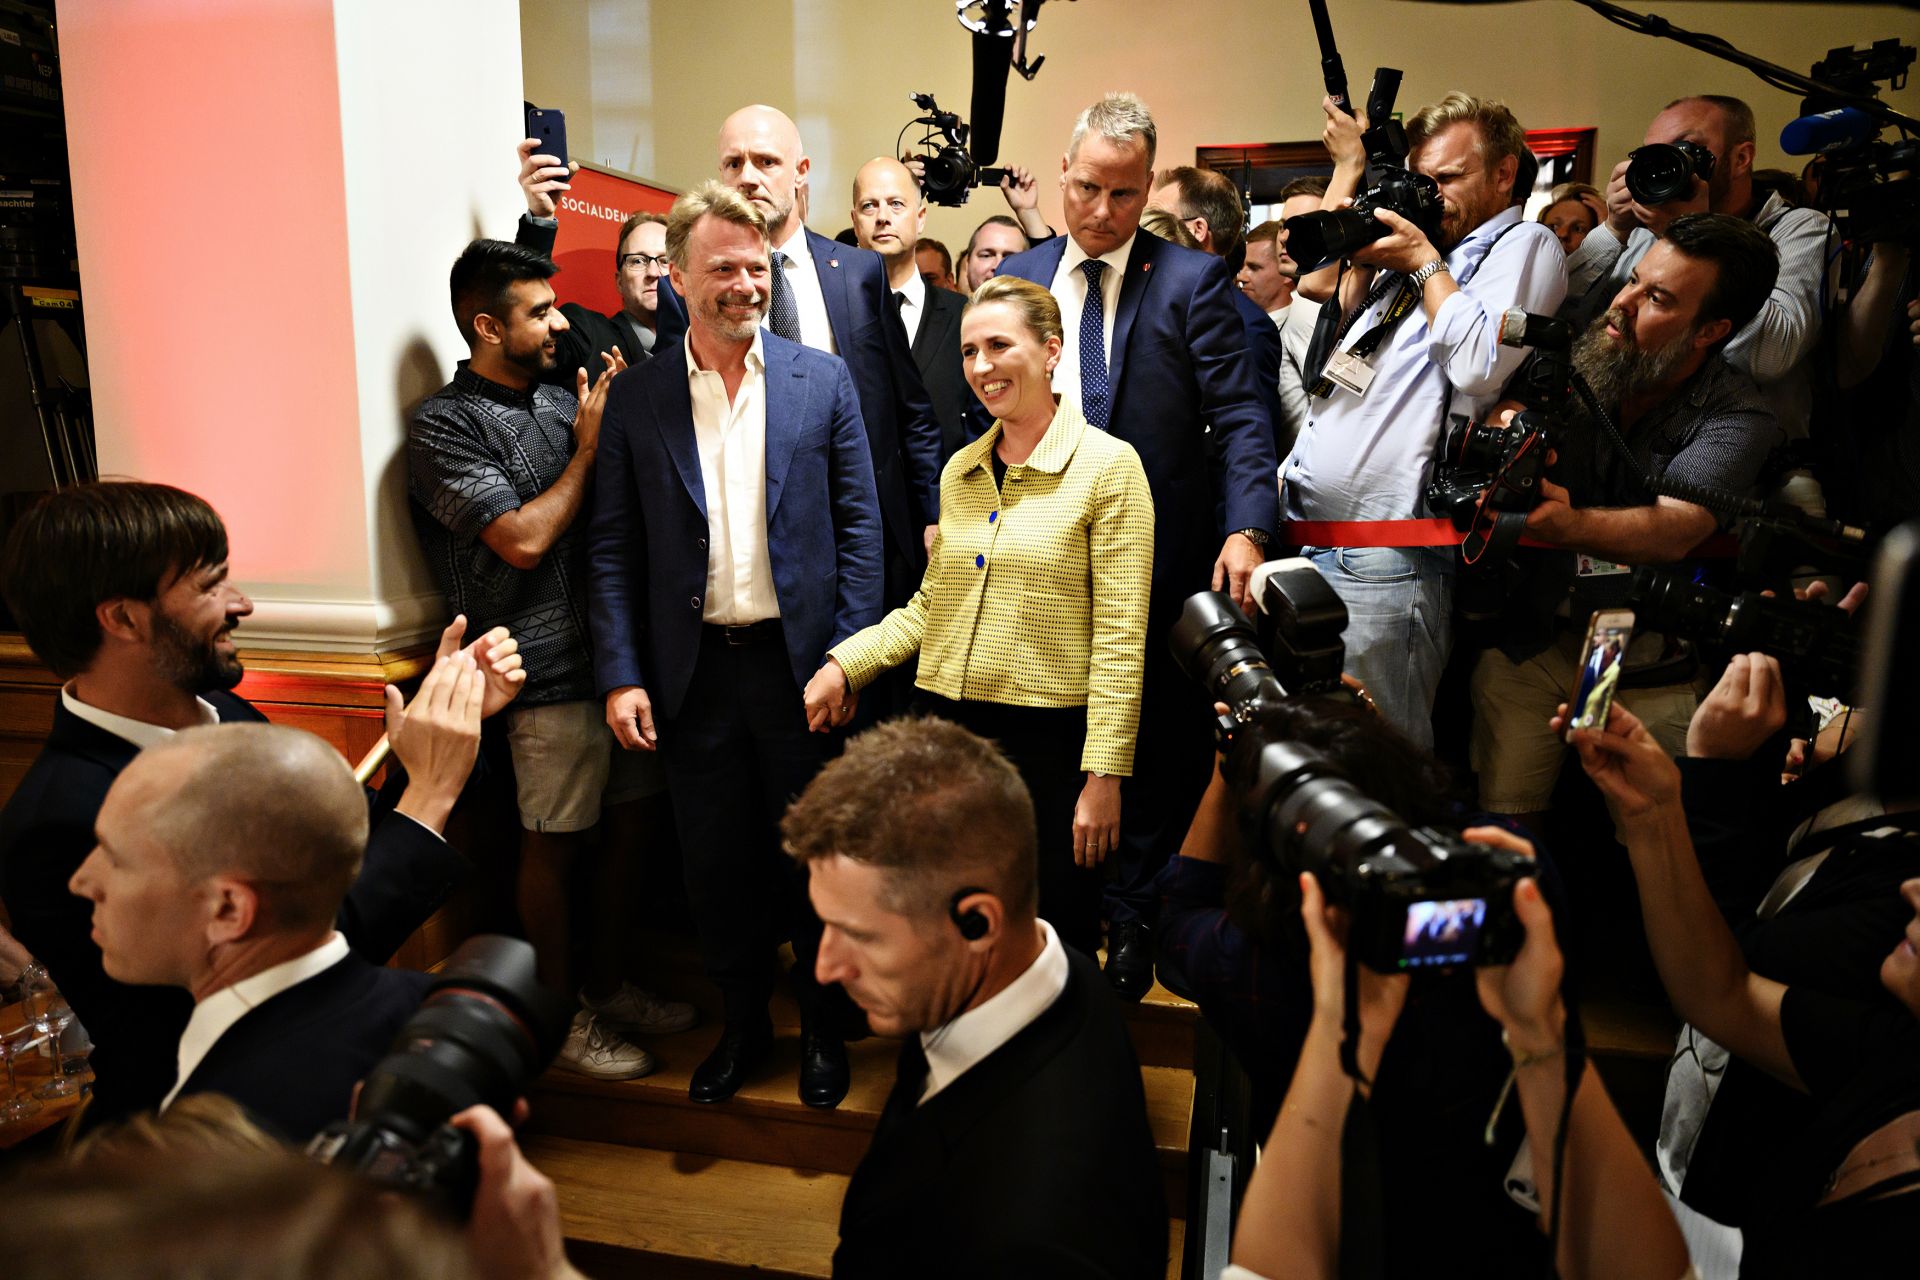 Най-вероятният следващ премиер на страната ще е лидерката на социалдемократите Мете Фредериксен